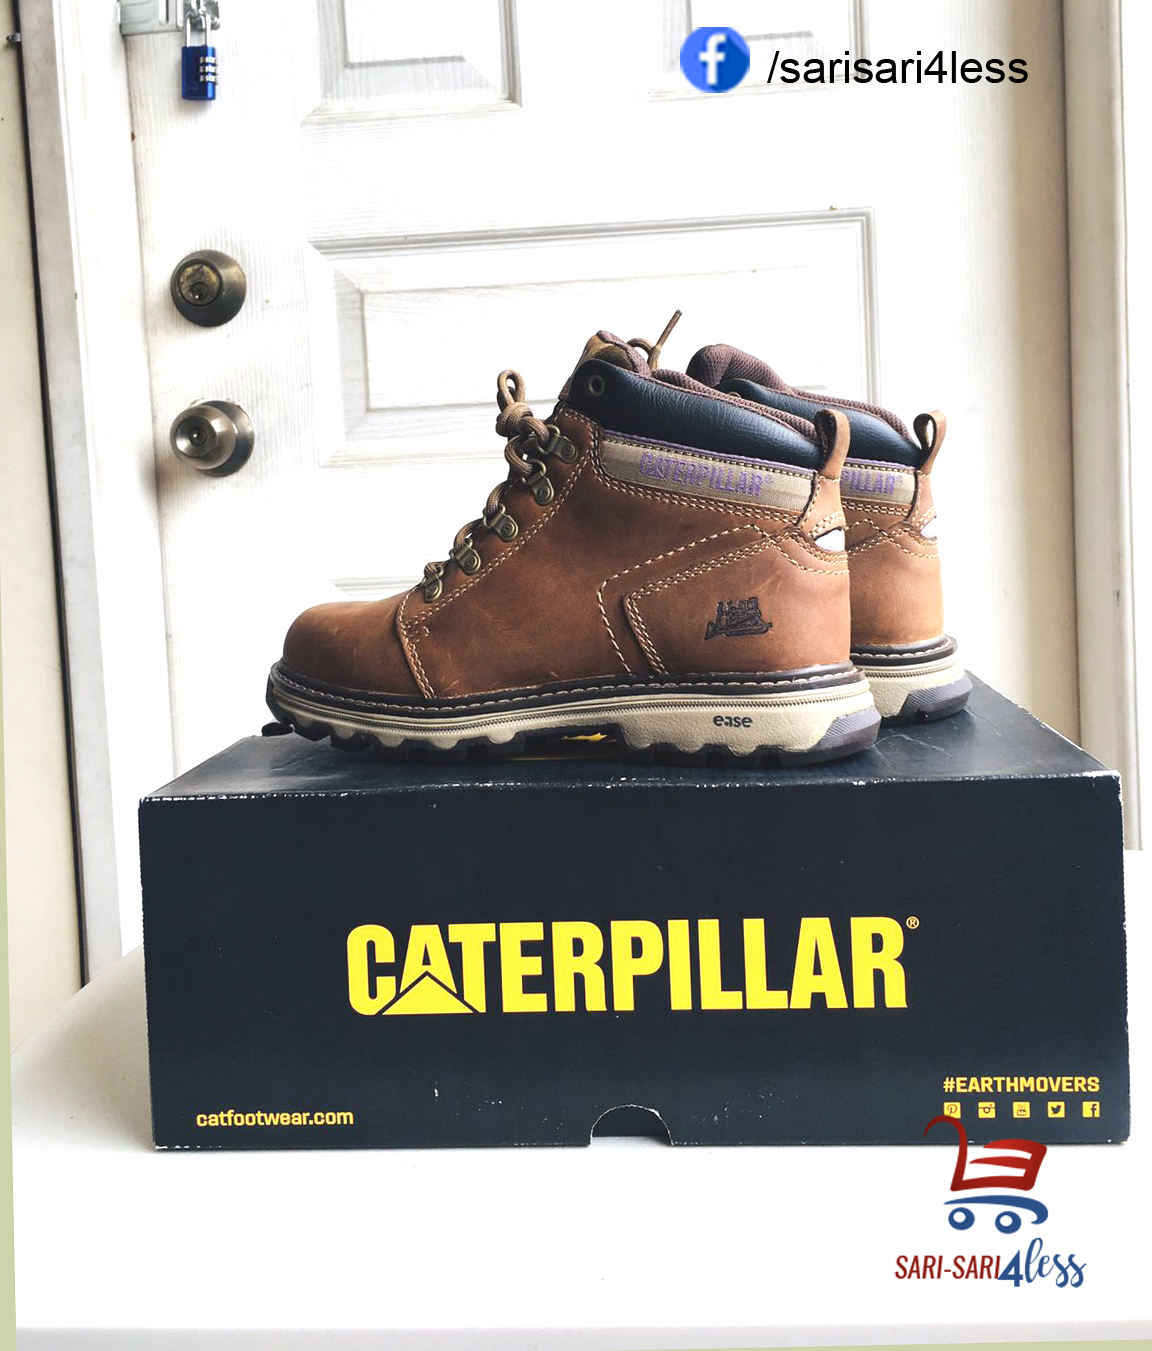 caterpillar brand shoes